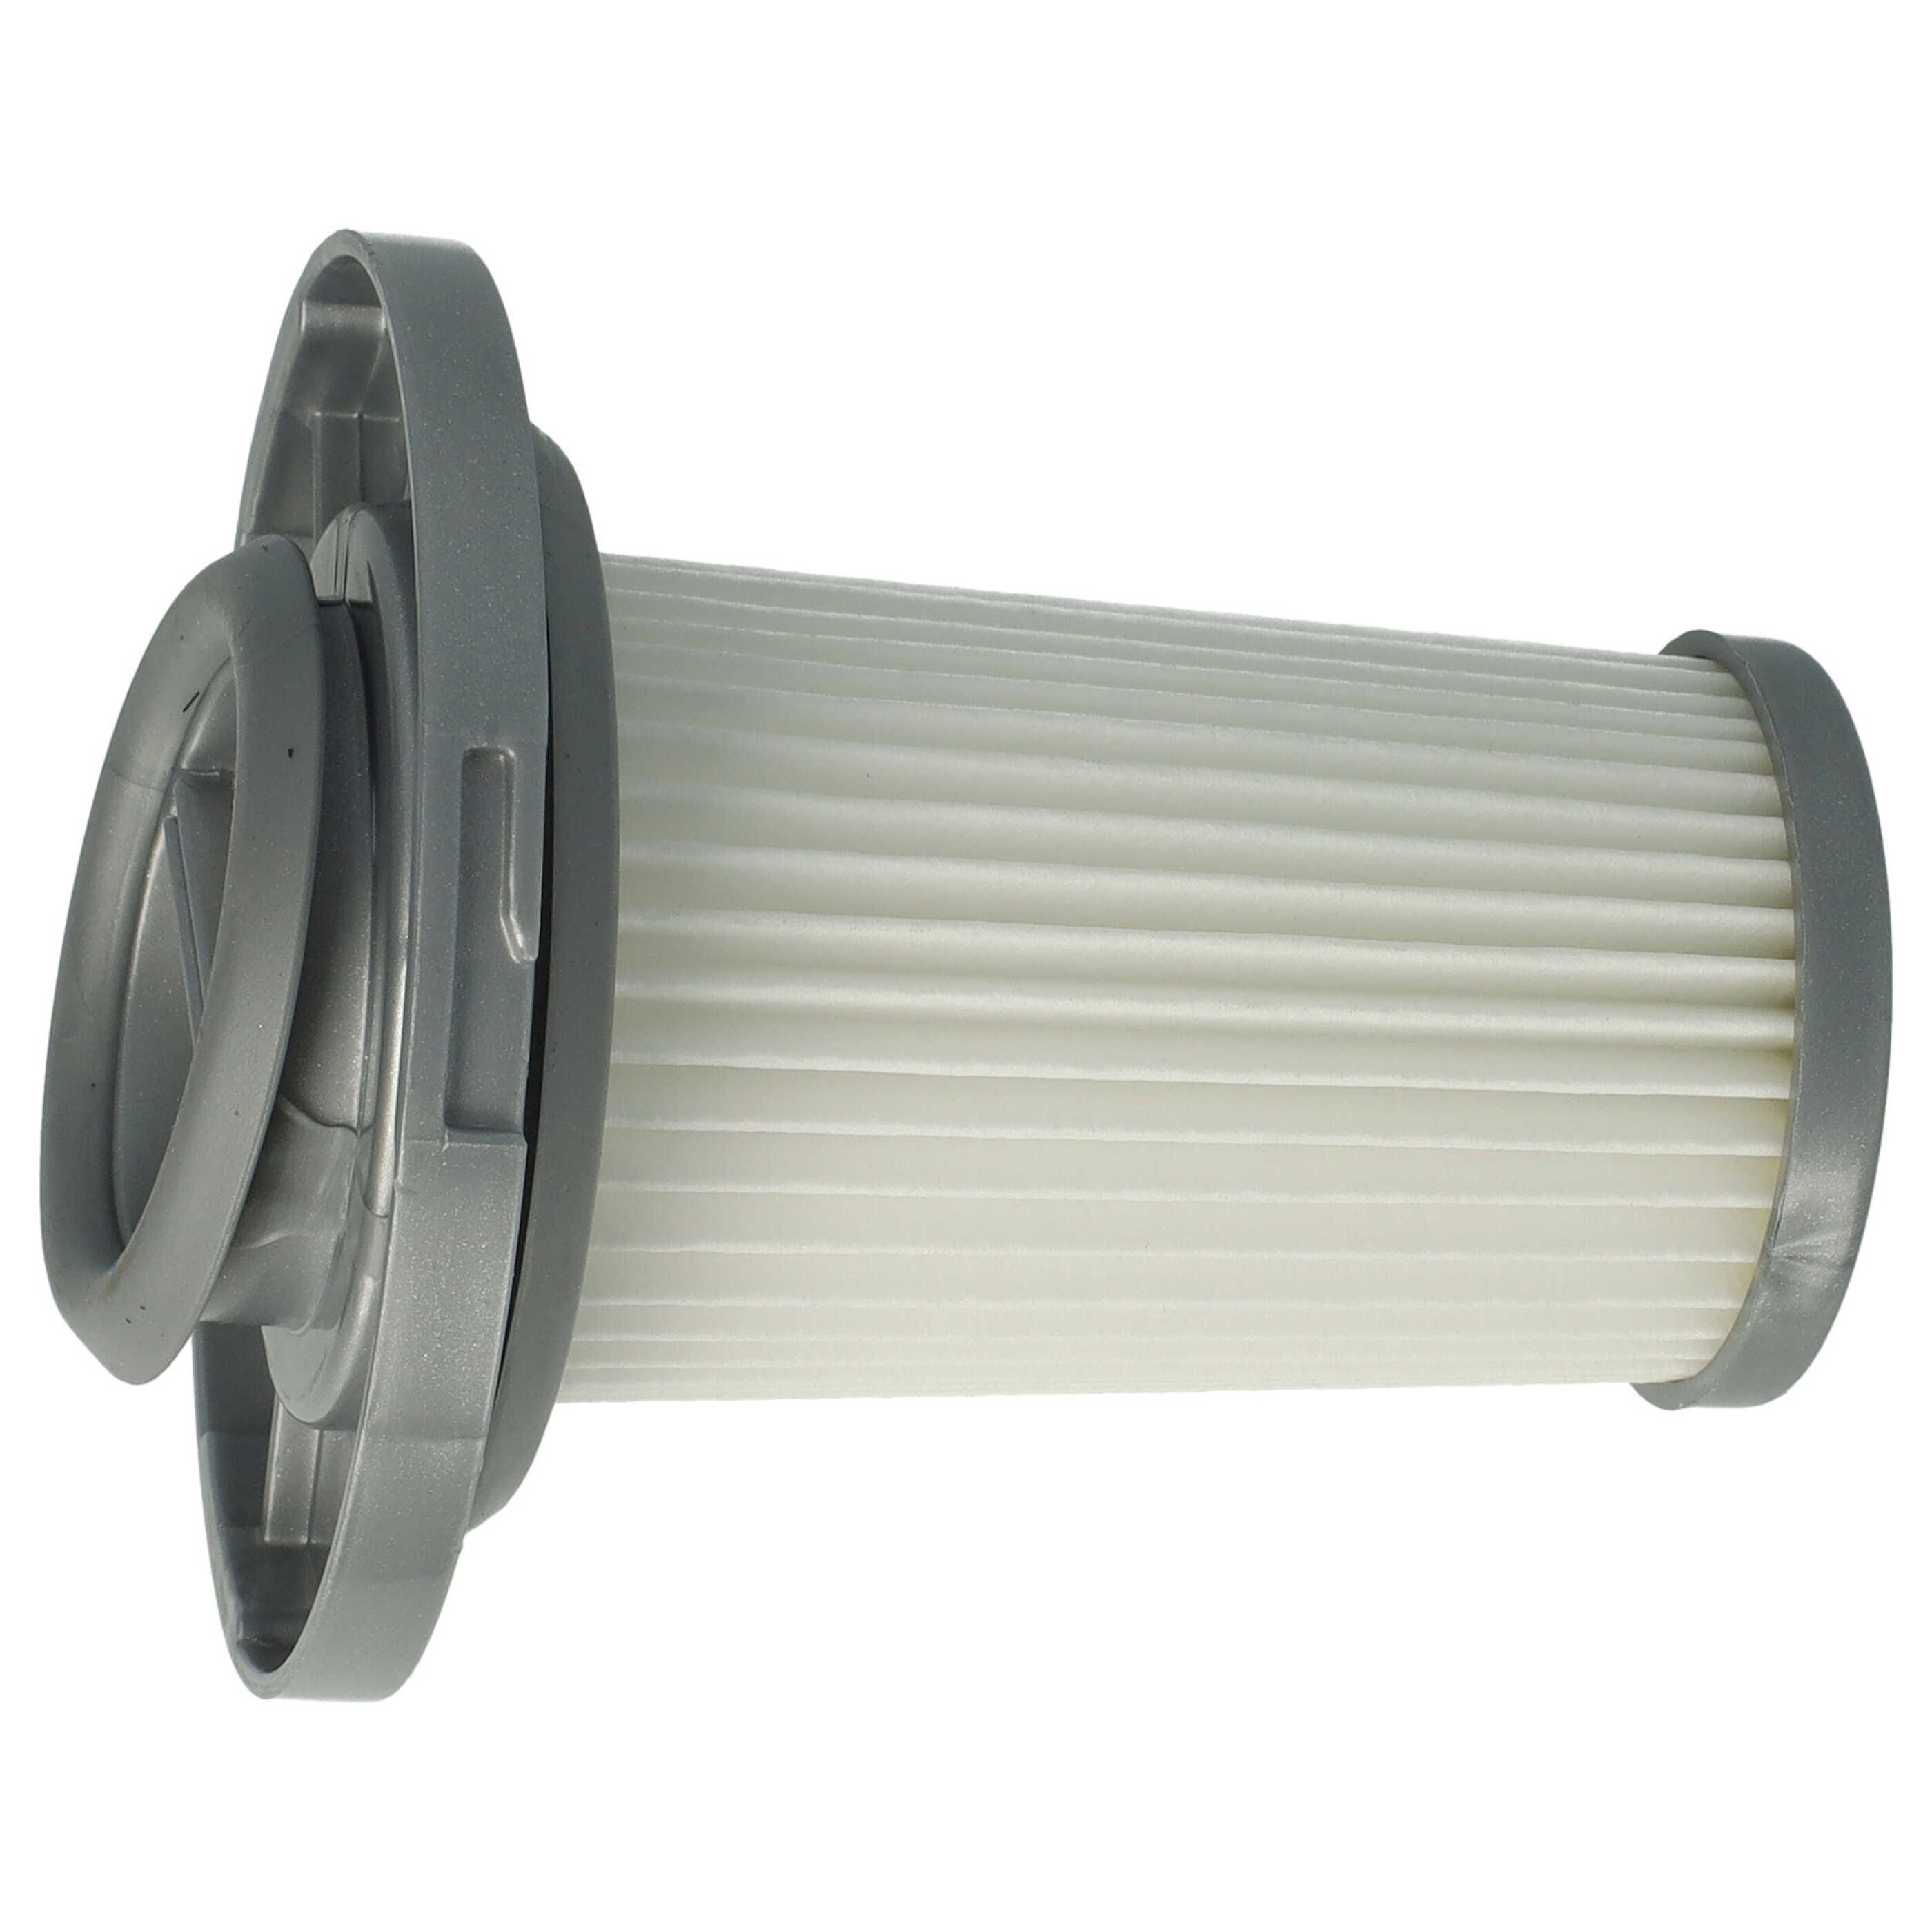 Vhbw filtro di separazione compatibile con Rowenta X-Force Flex 8.60  Allergy RH9680WO aspirapolvere - Filtro di ricambio, lavabile, bianco /  grigio